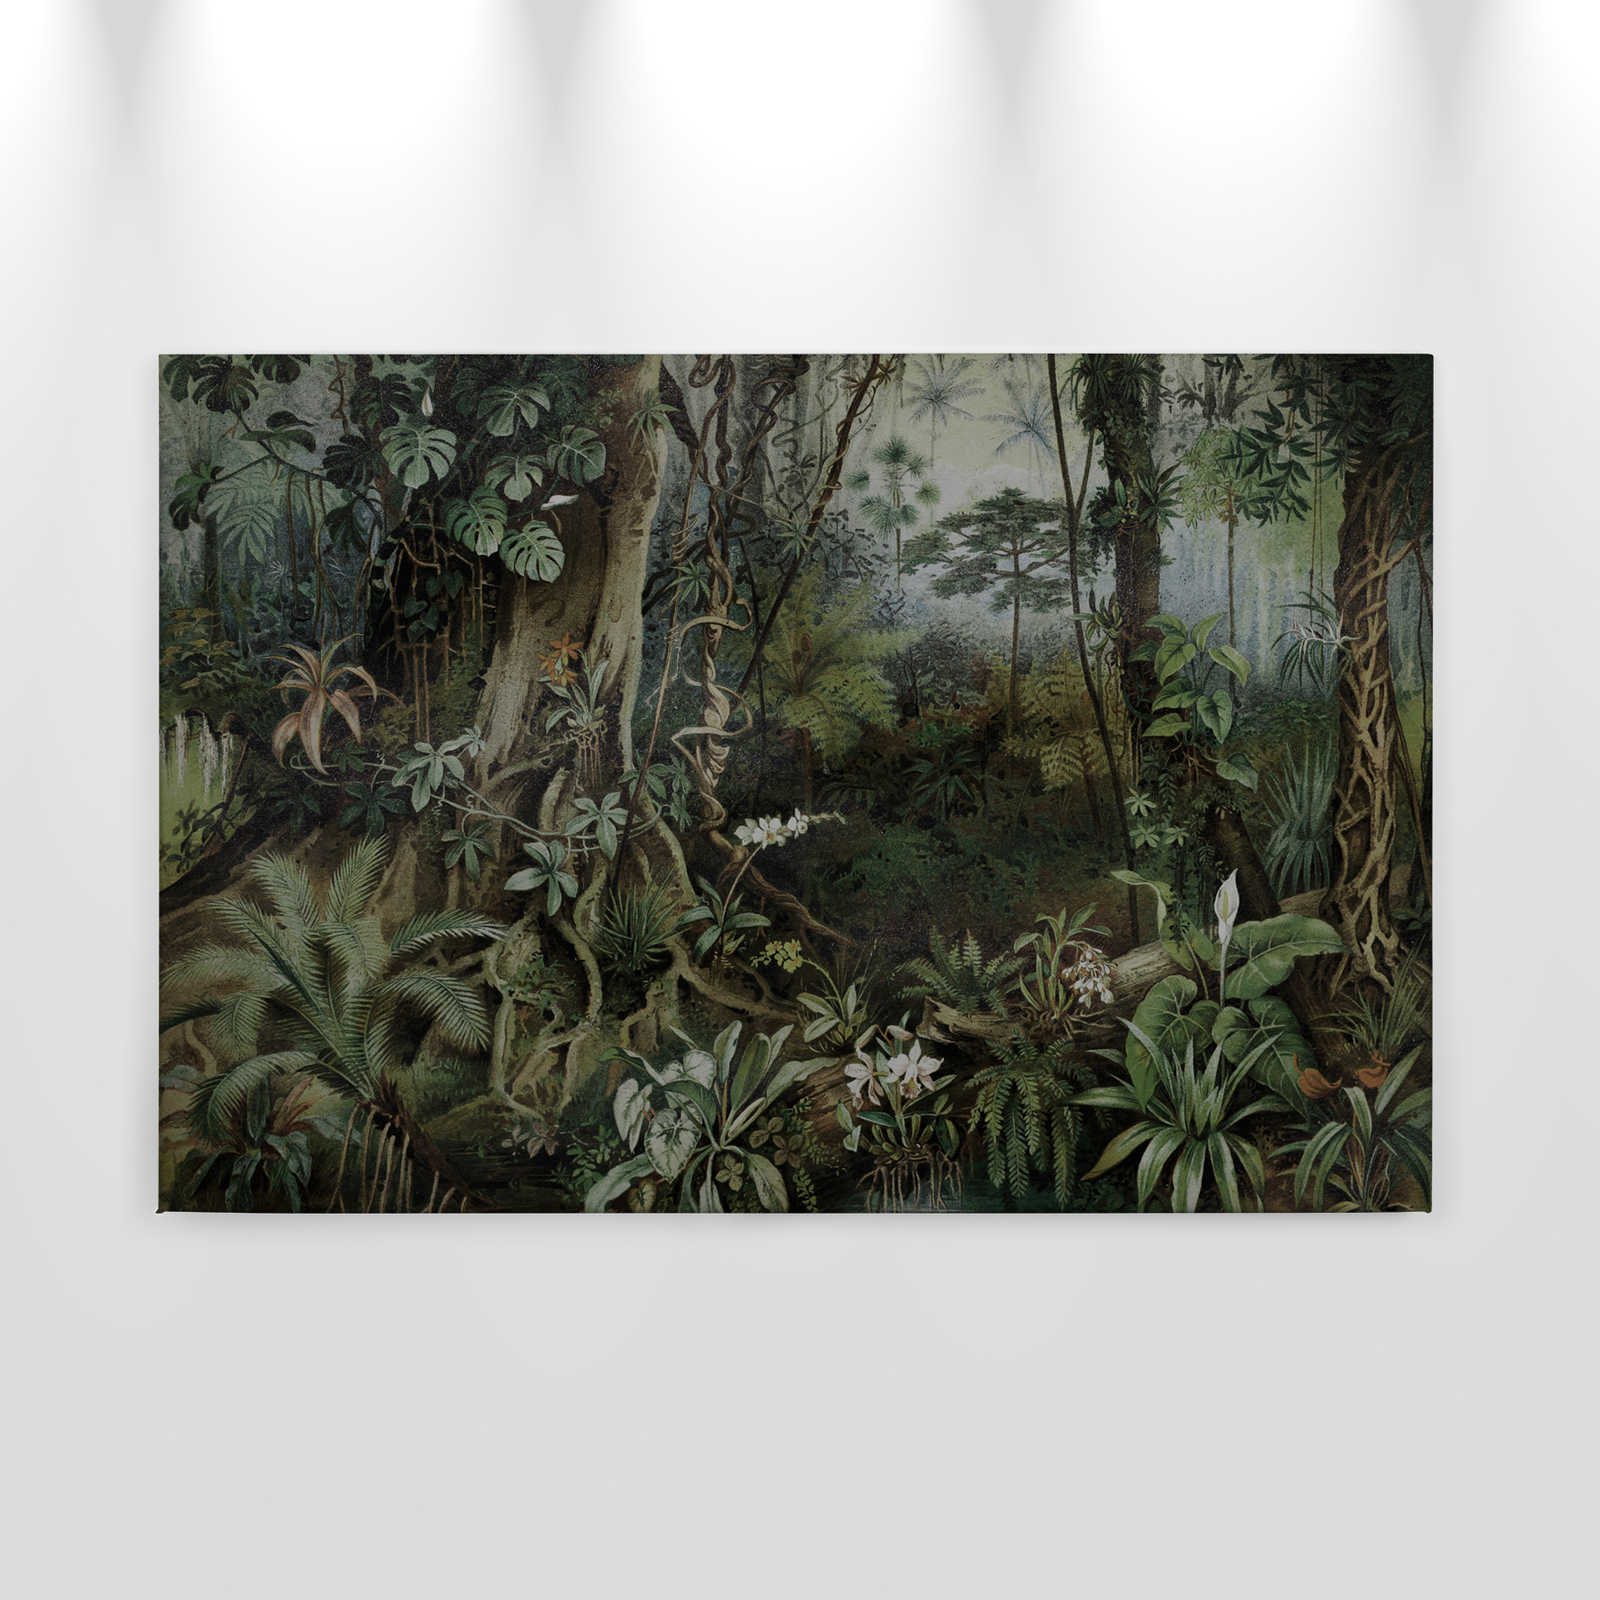             Jungle toile style dessin | walls by patel - 0,90 m x 0,60 m
        